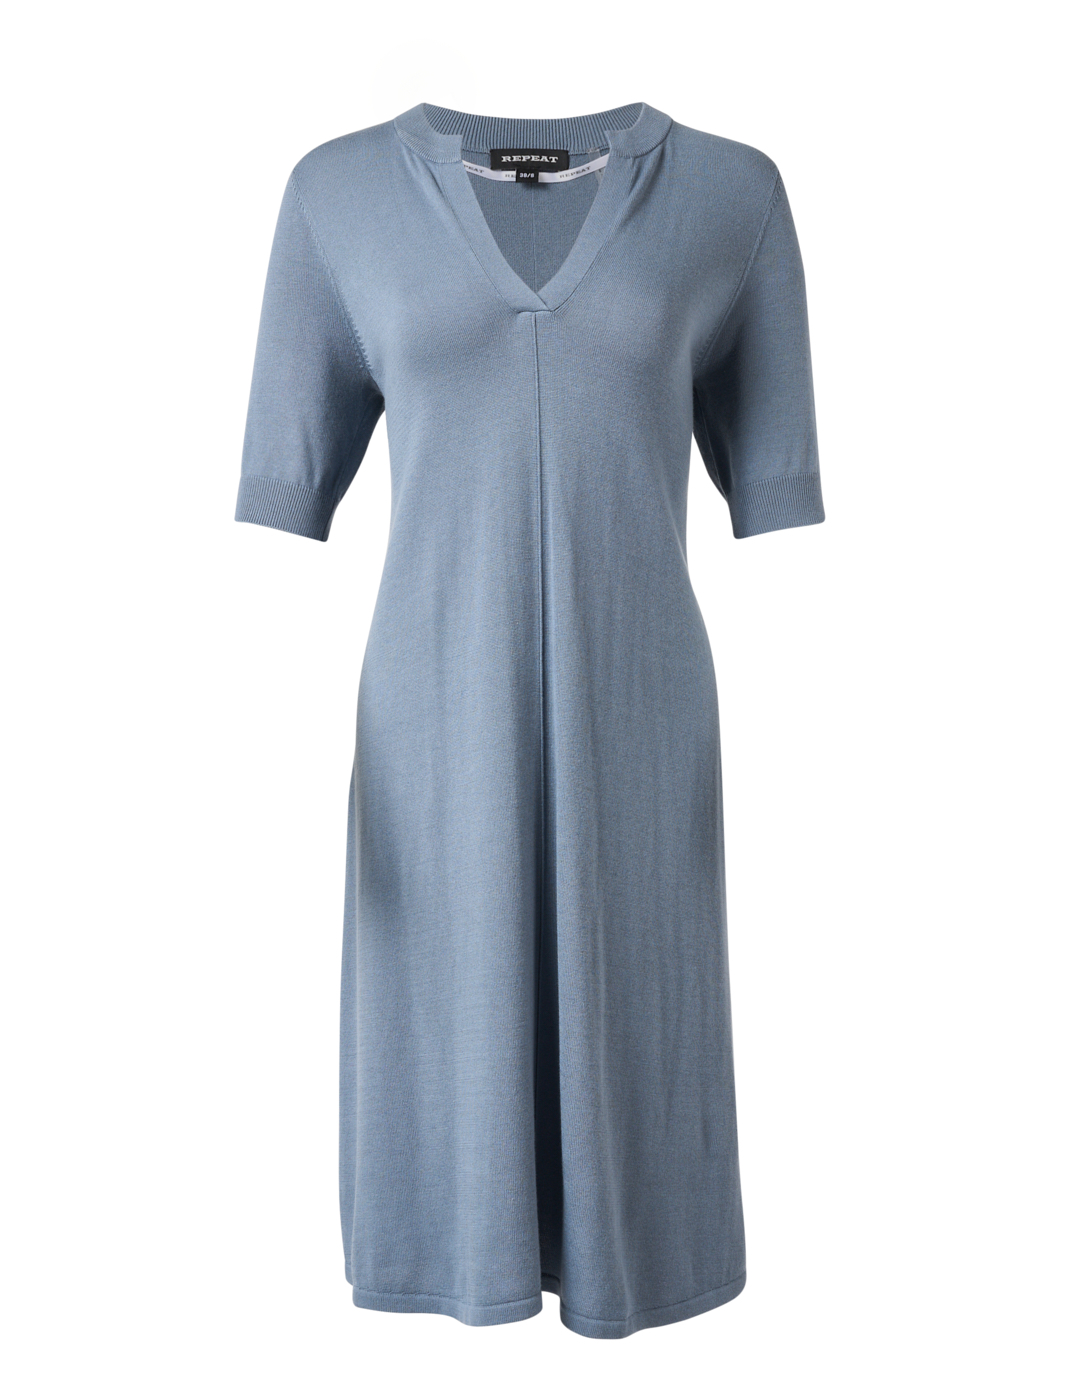 Sui Echter burgemeester Steel Blue Cotton Blend Knit Dress | Repeat Cashmere